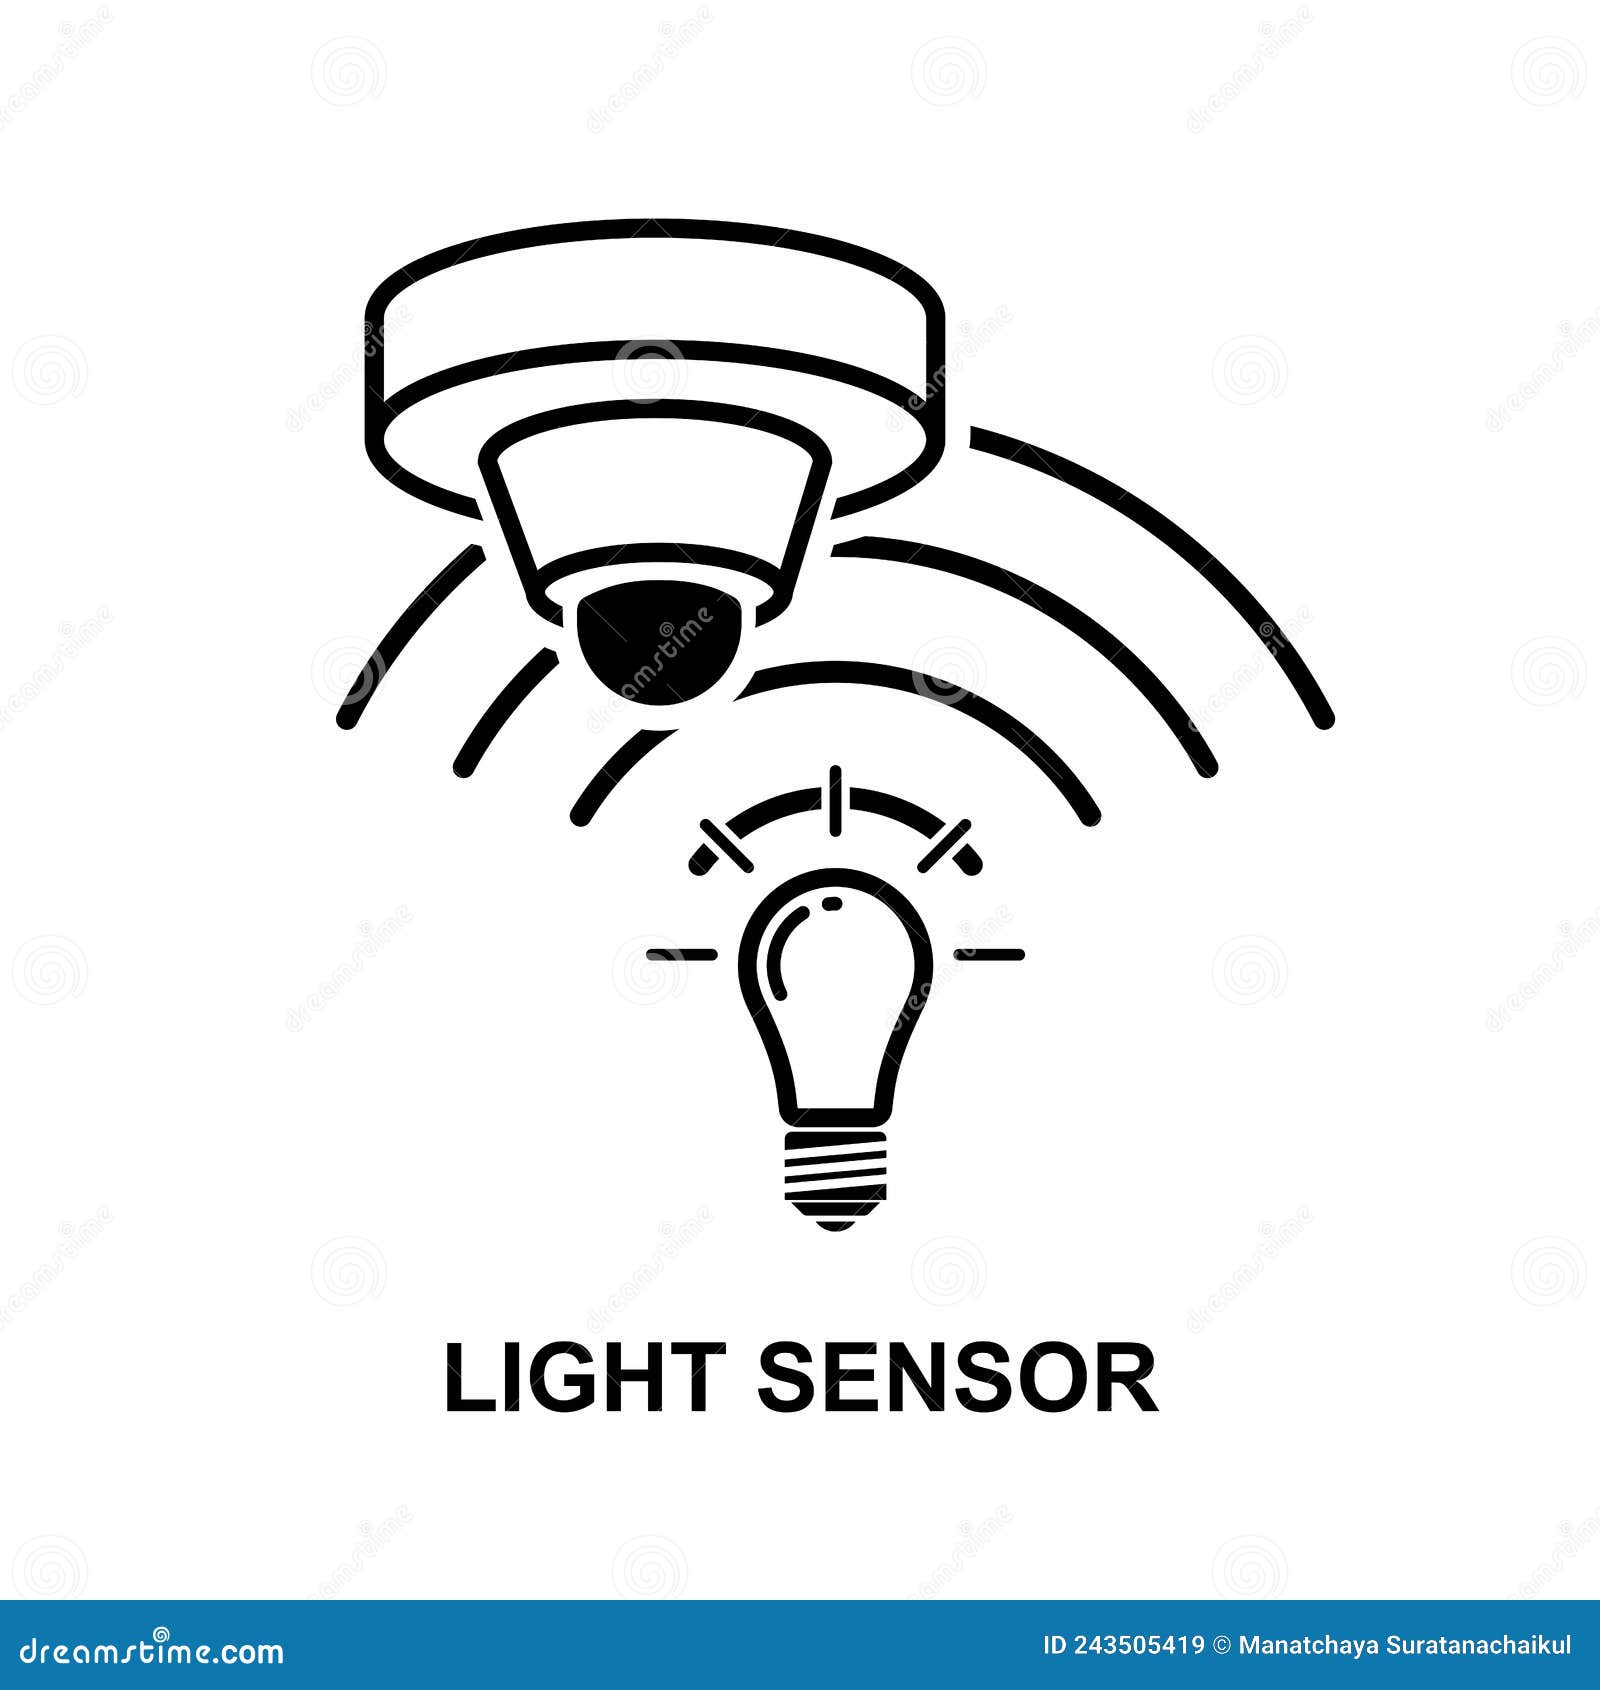 light sensor icon  on white baackground  .